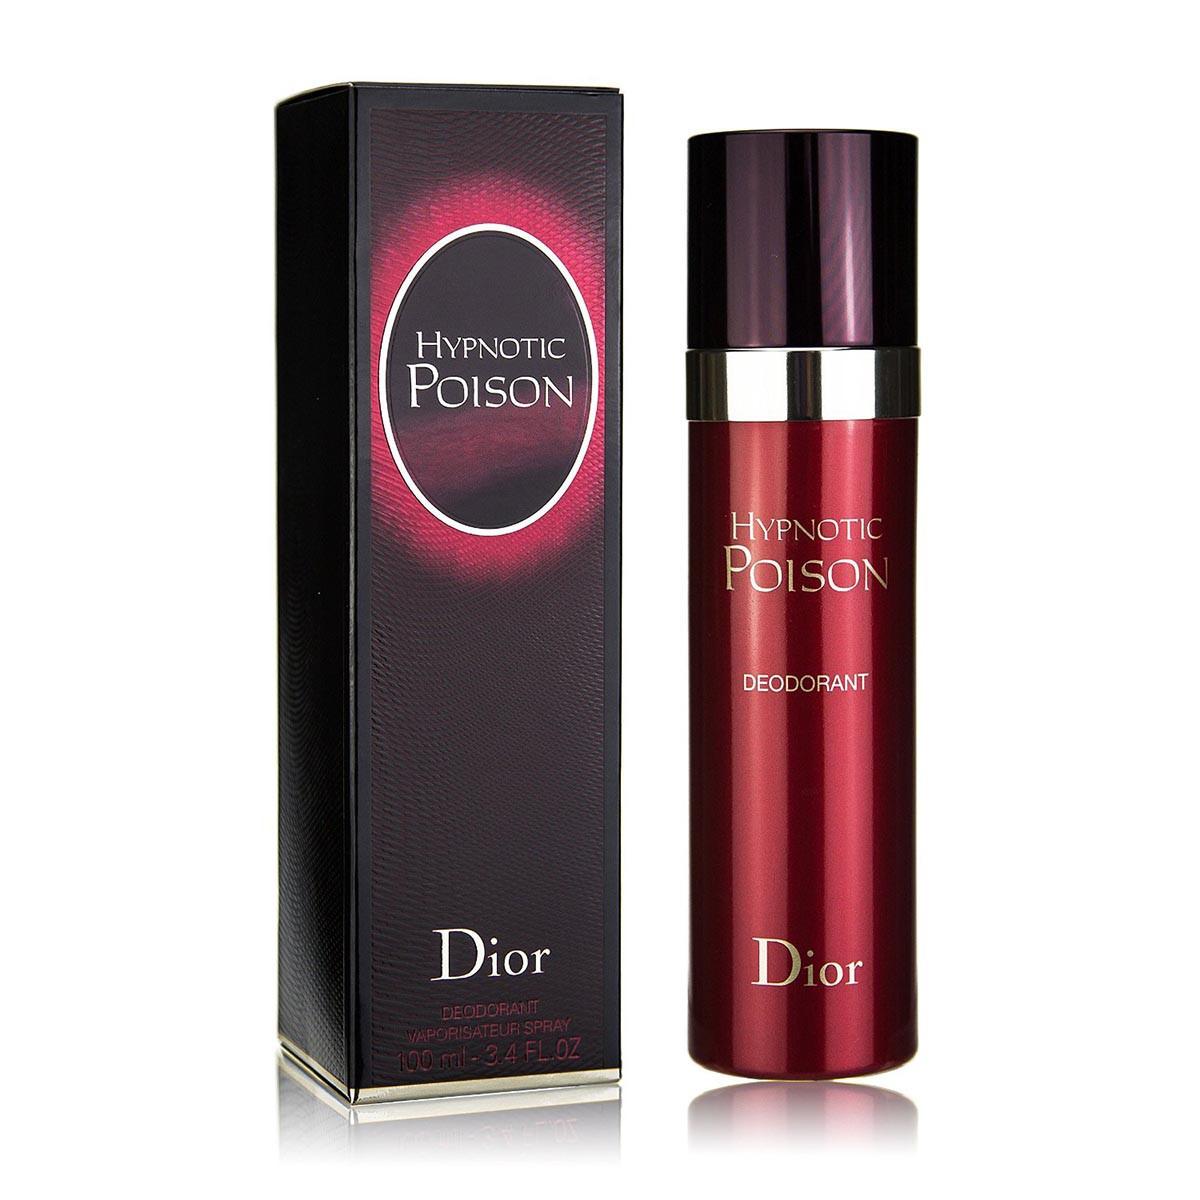 dior-desodorant-hypnotic-poison-100ml